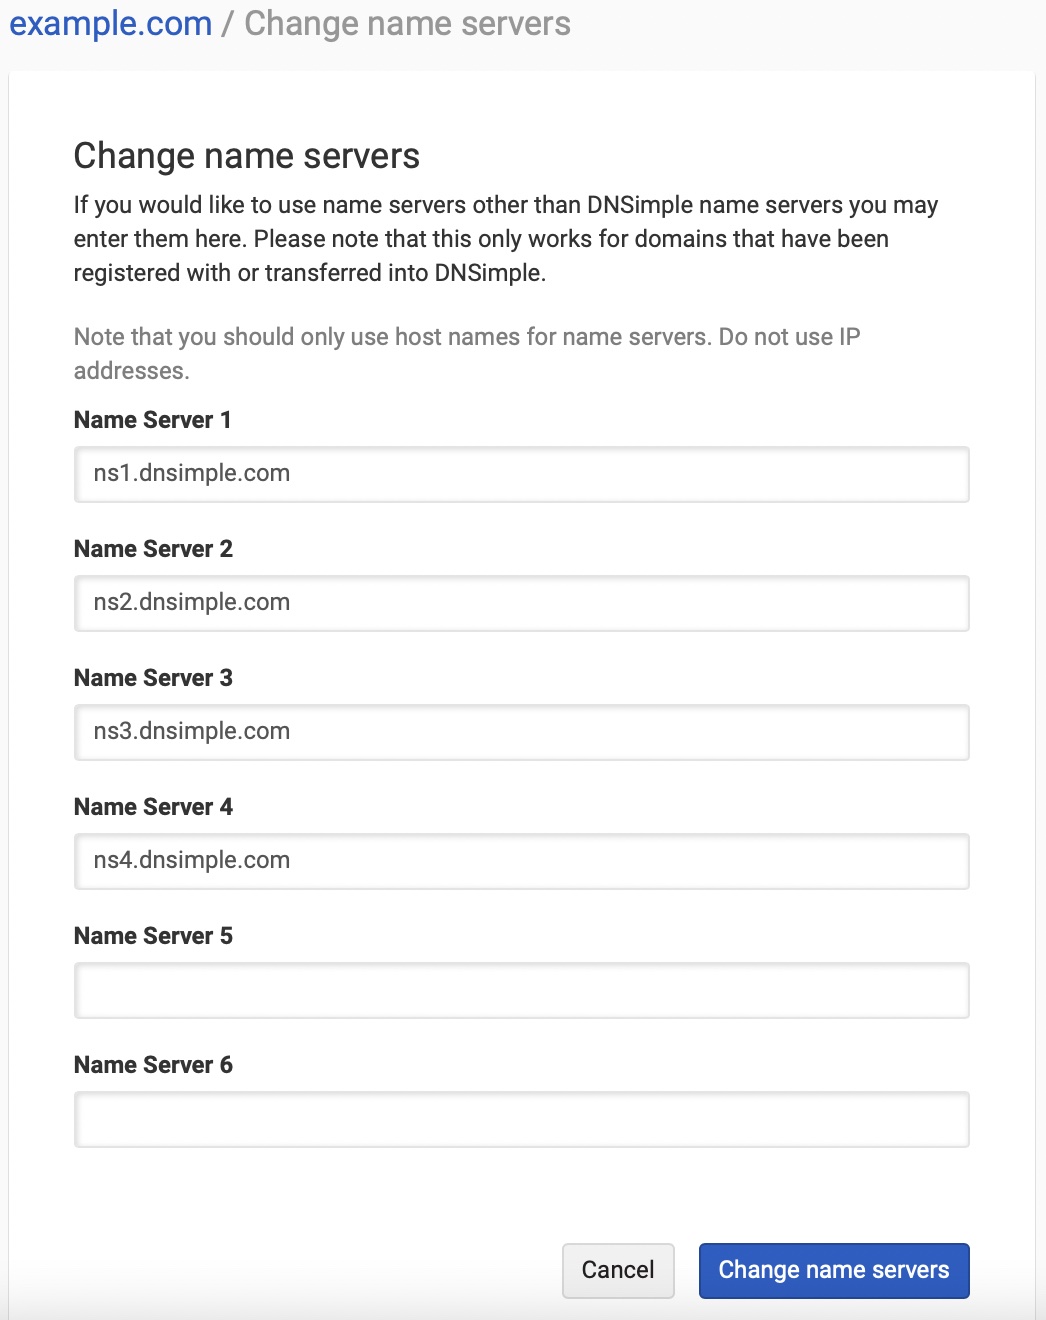 Change name servers